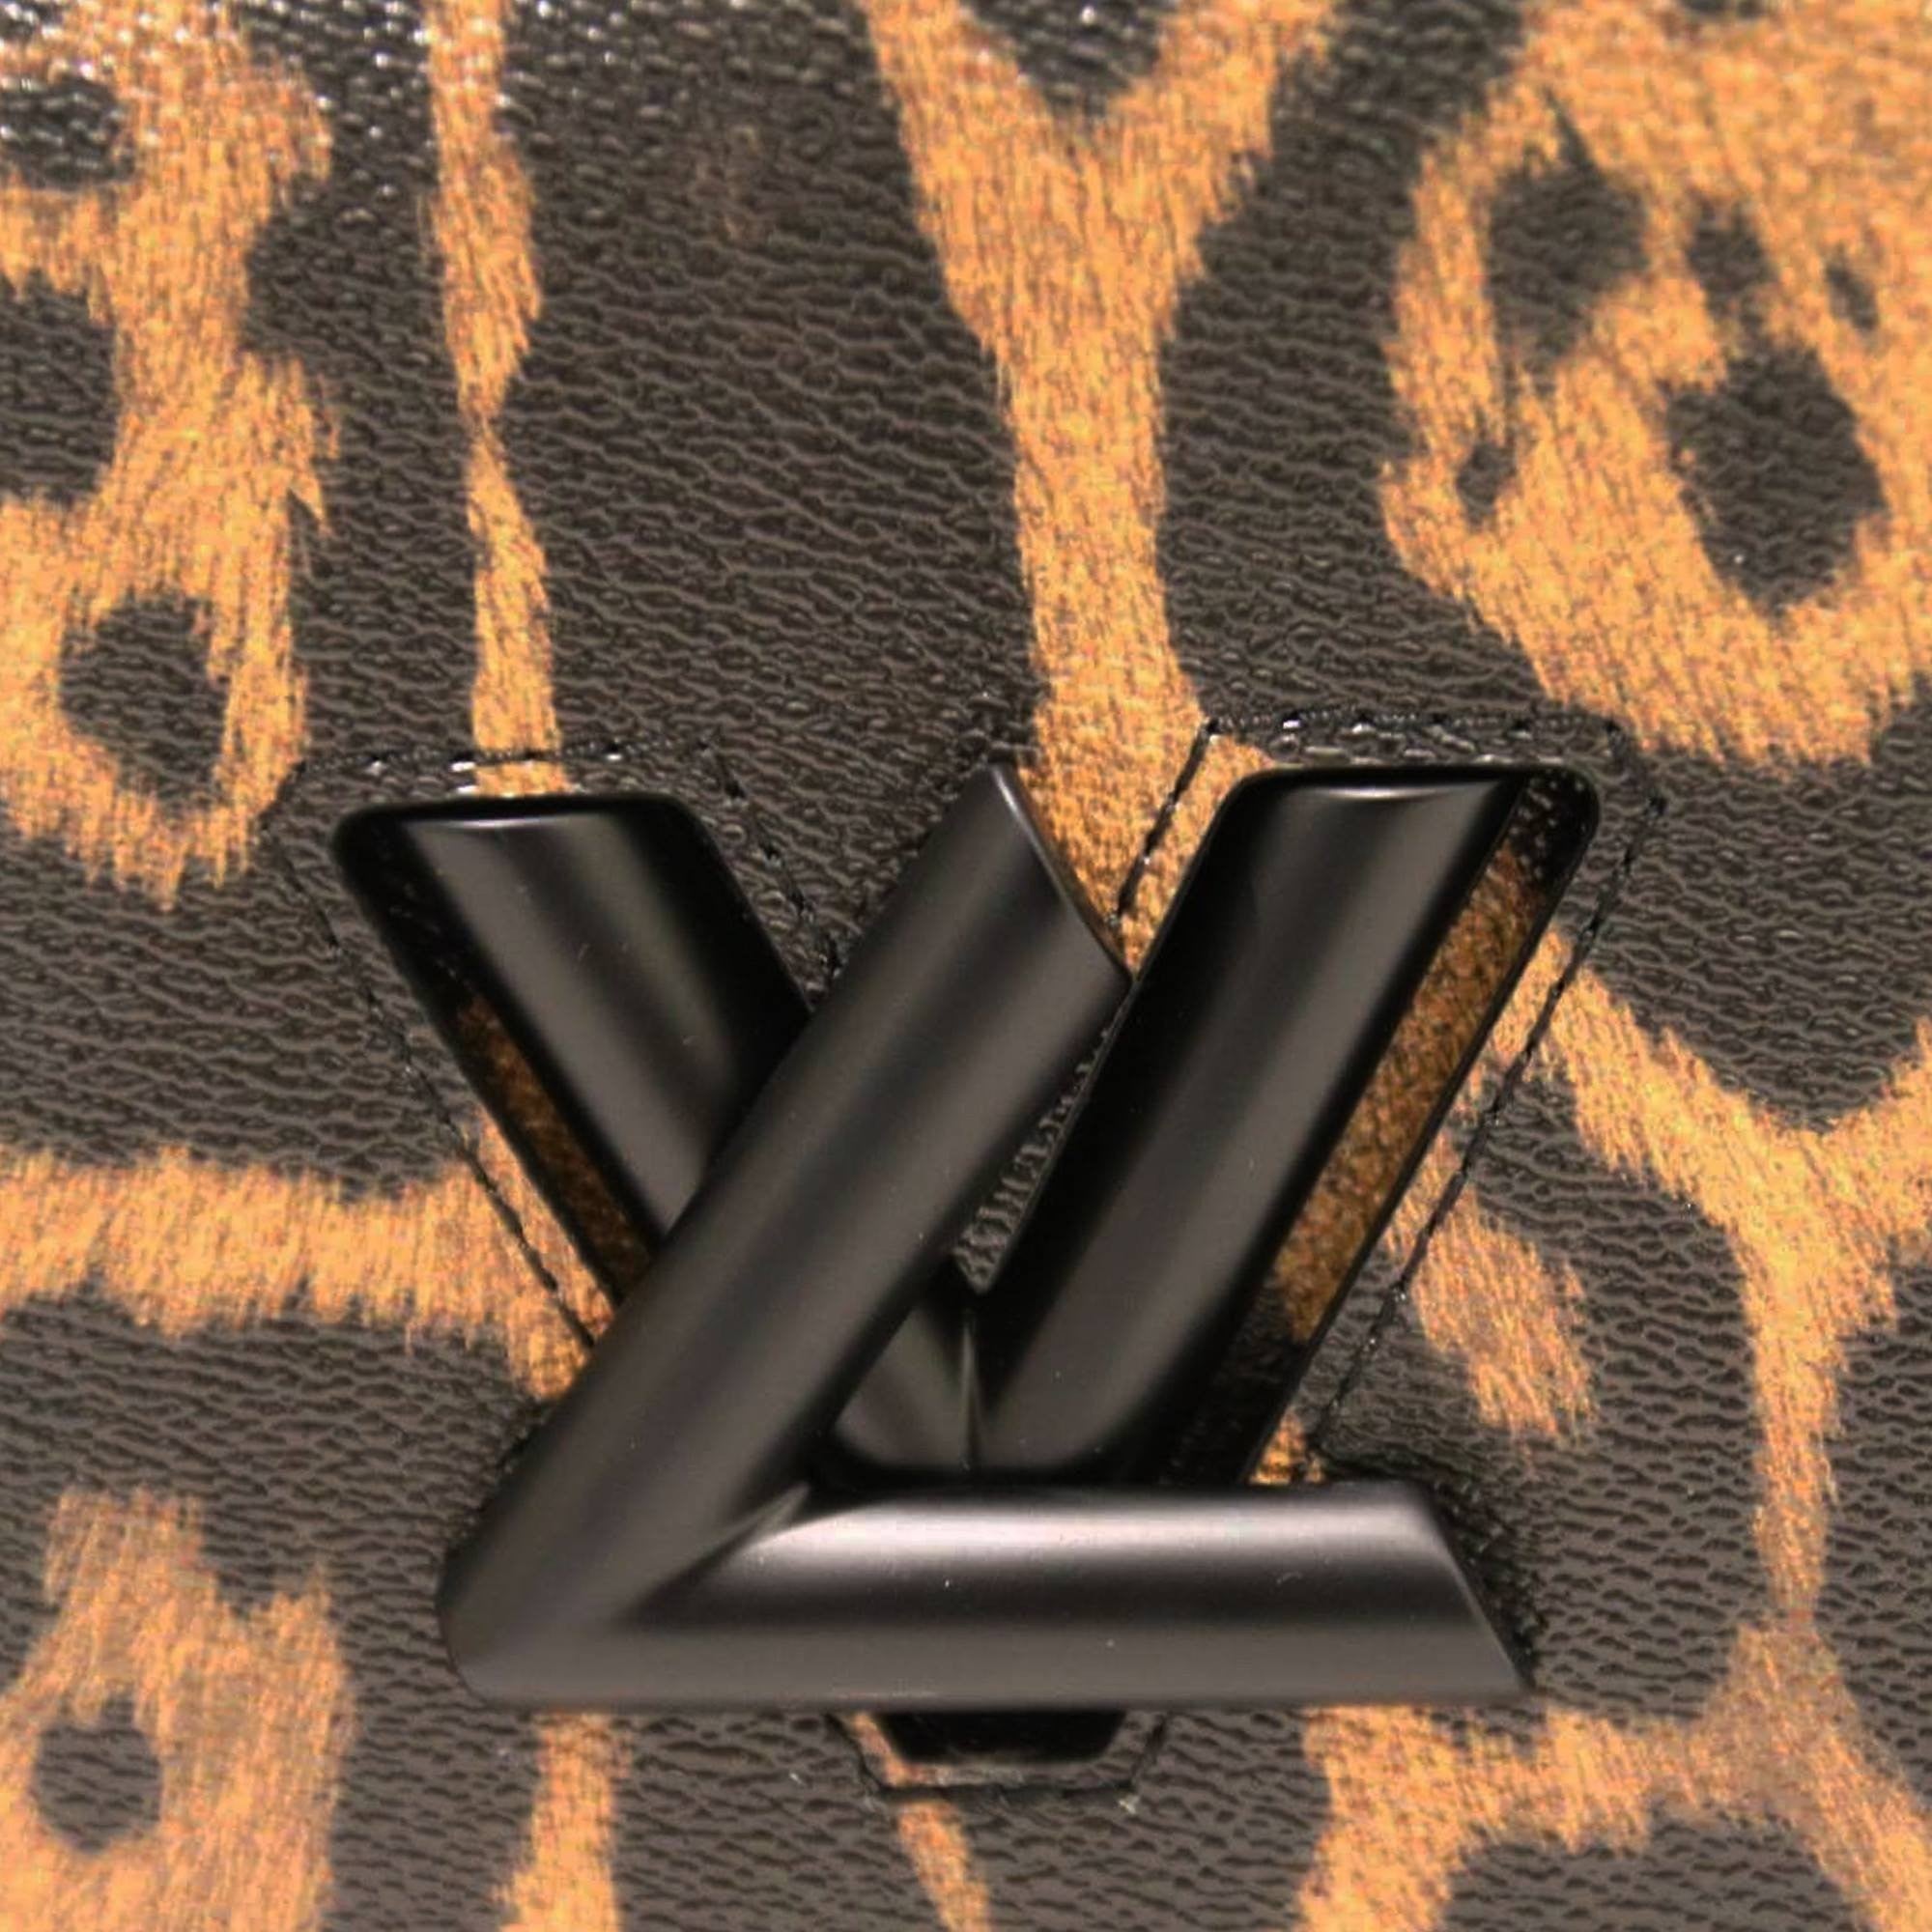 Louis Vuitton, Epi Leather Twist Series Wild Animal